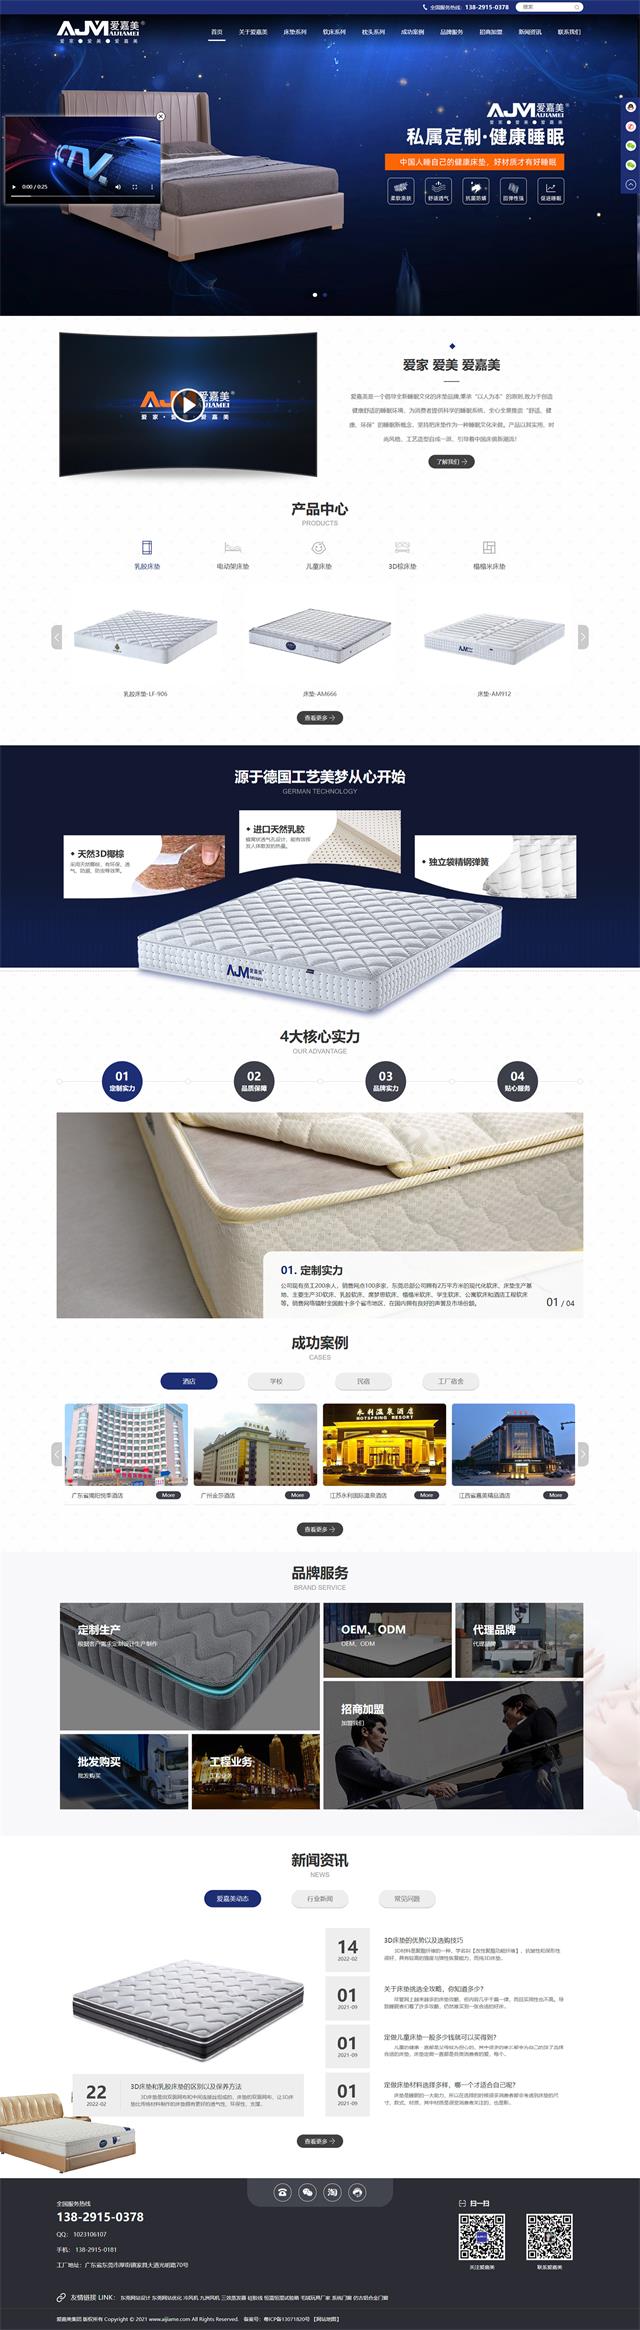 东莞家具品牌网站建设案例